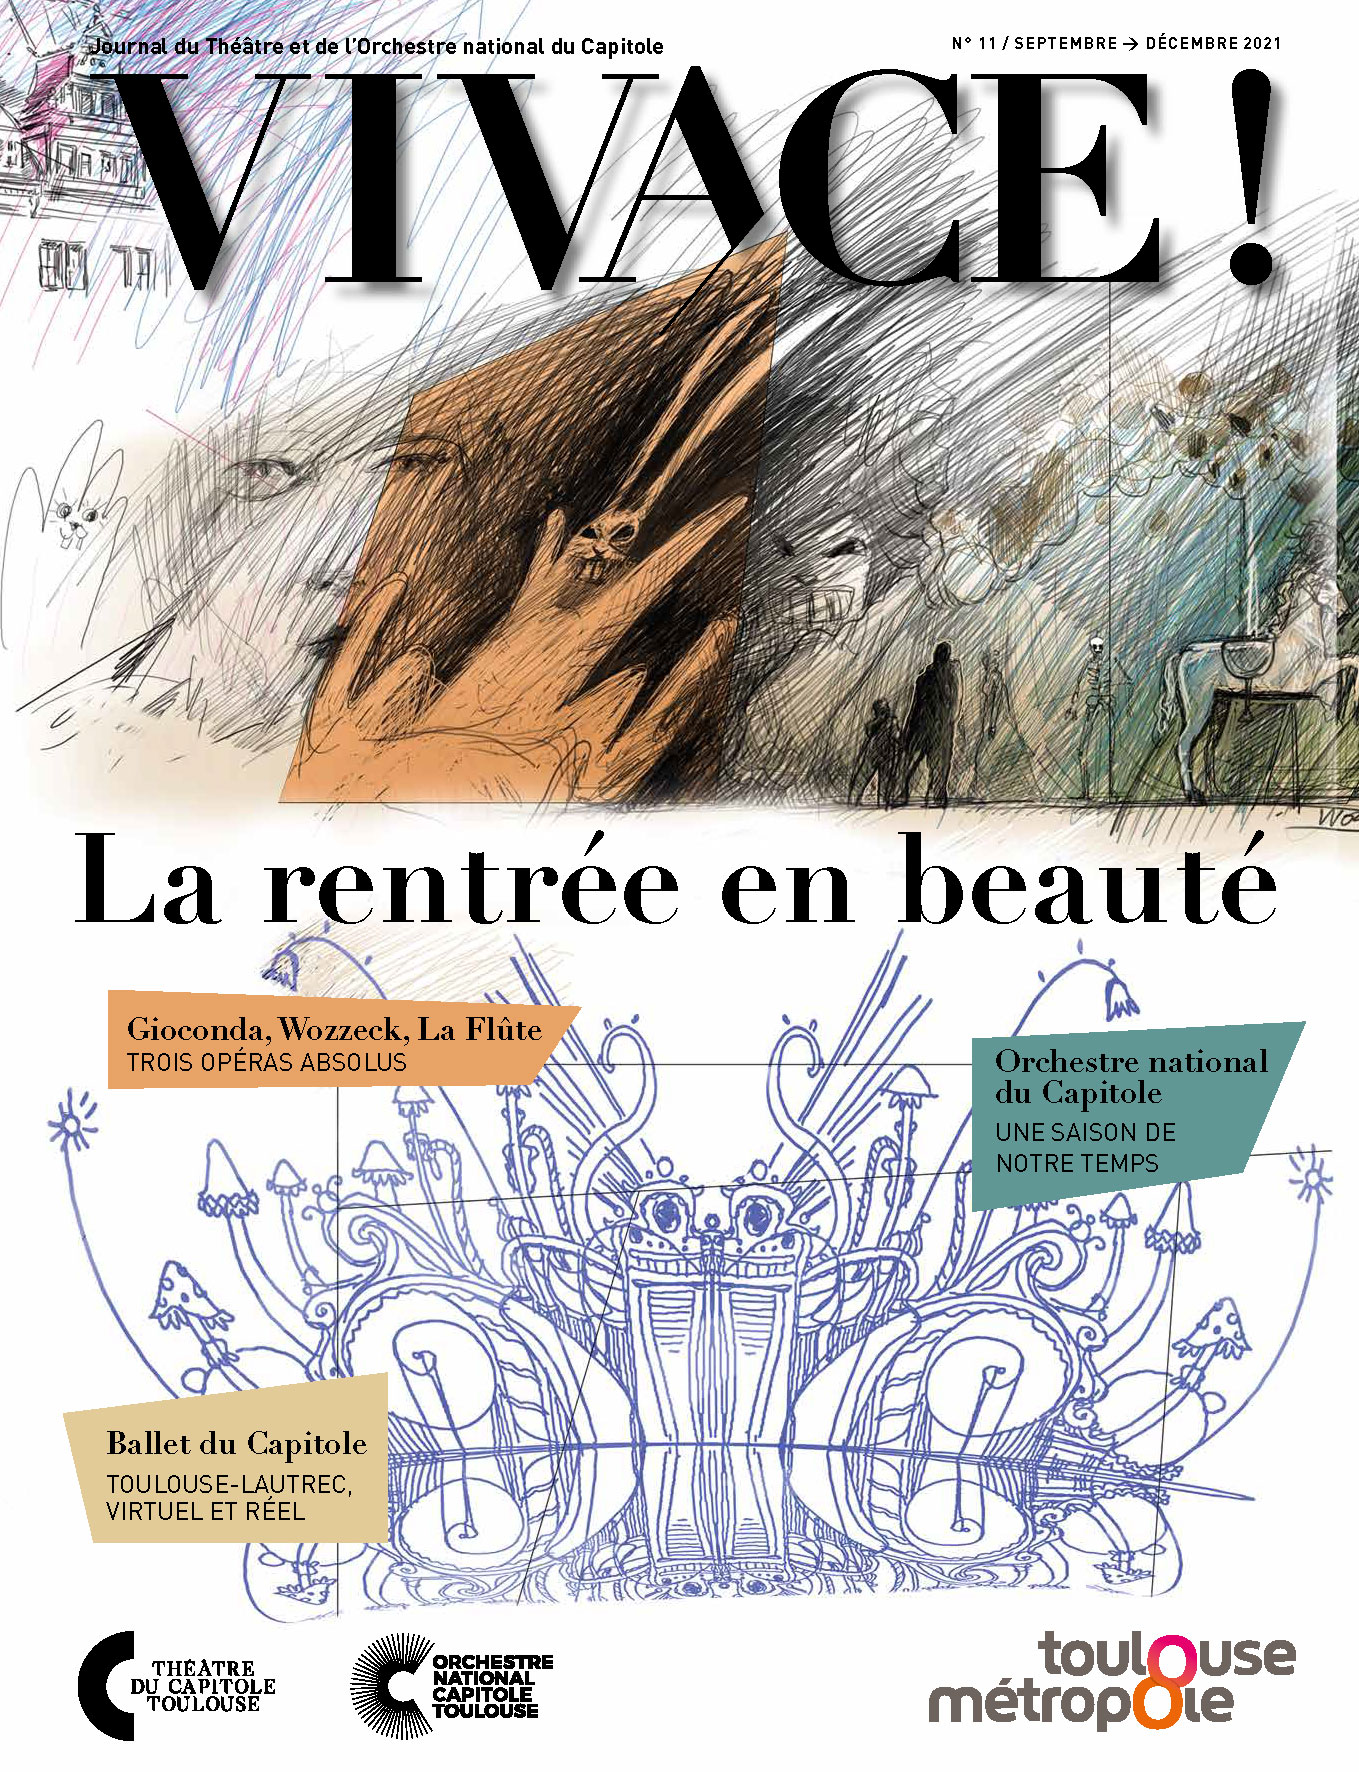 Journal Vivace n°11